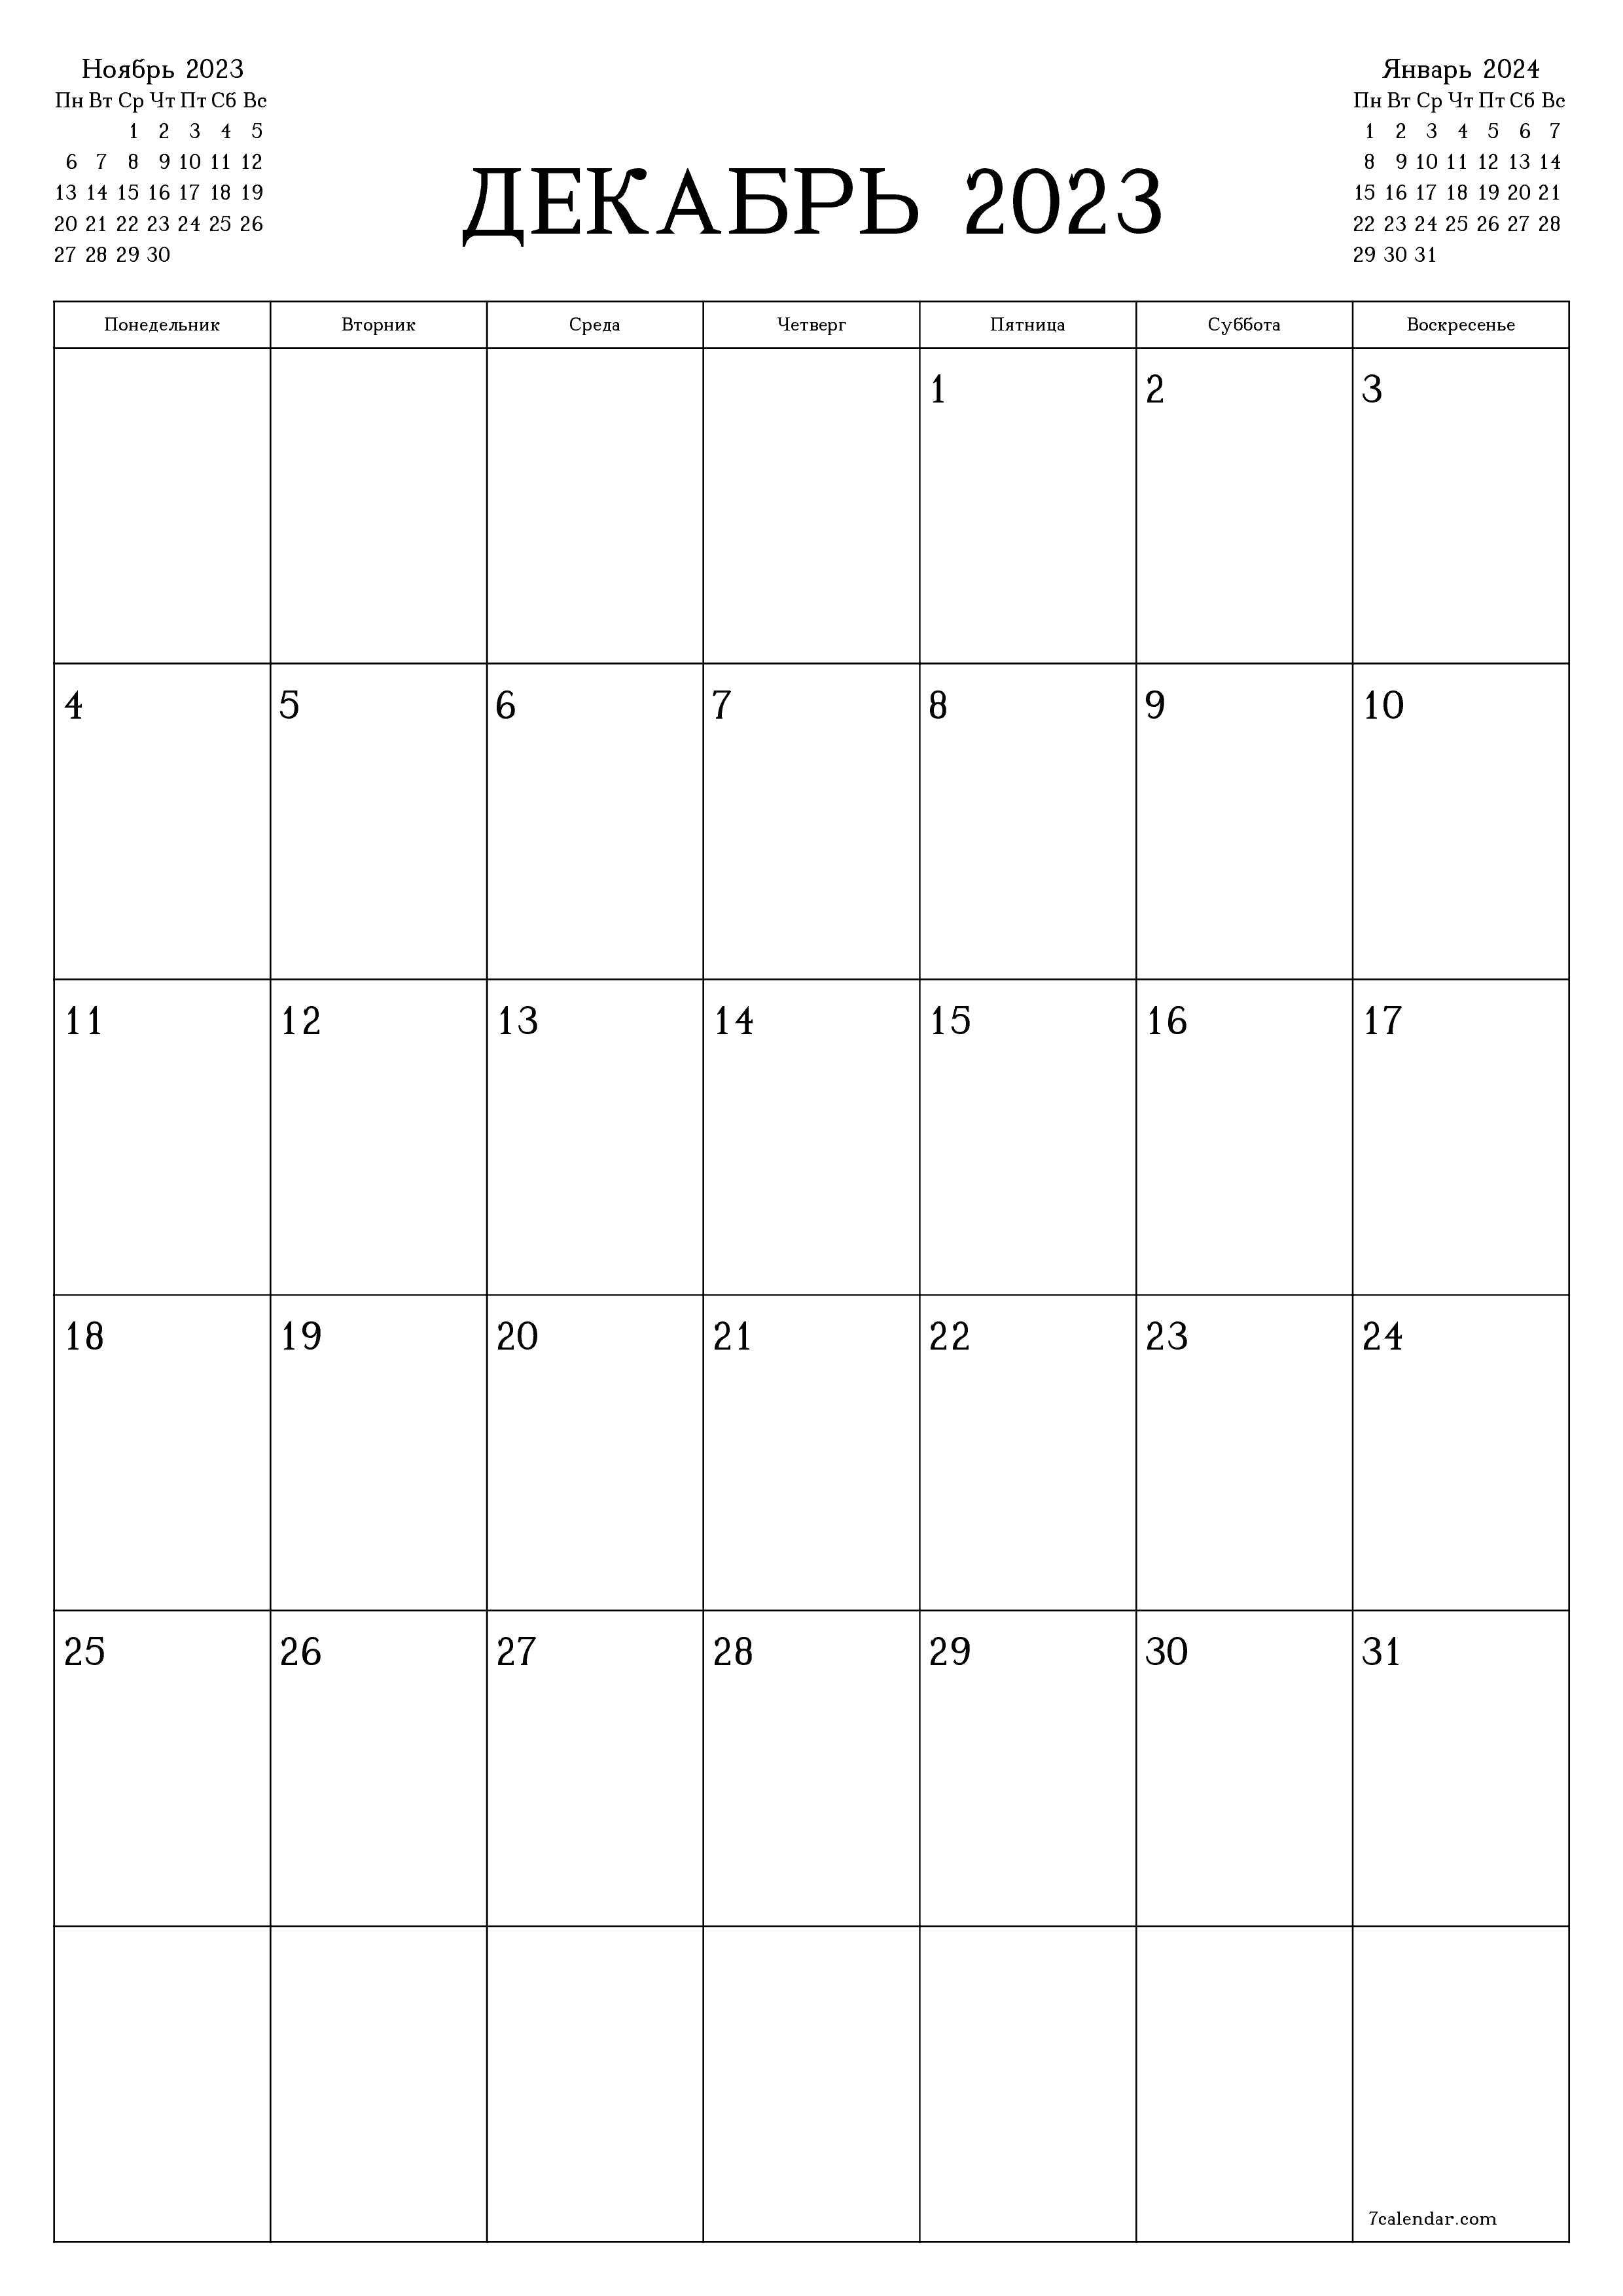 Календари и планеры для печати Декабрь 2023 A4, A3 в PDF и PNG - 7calendar